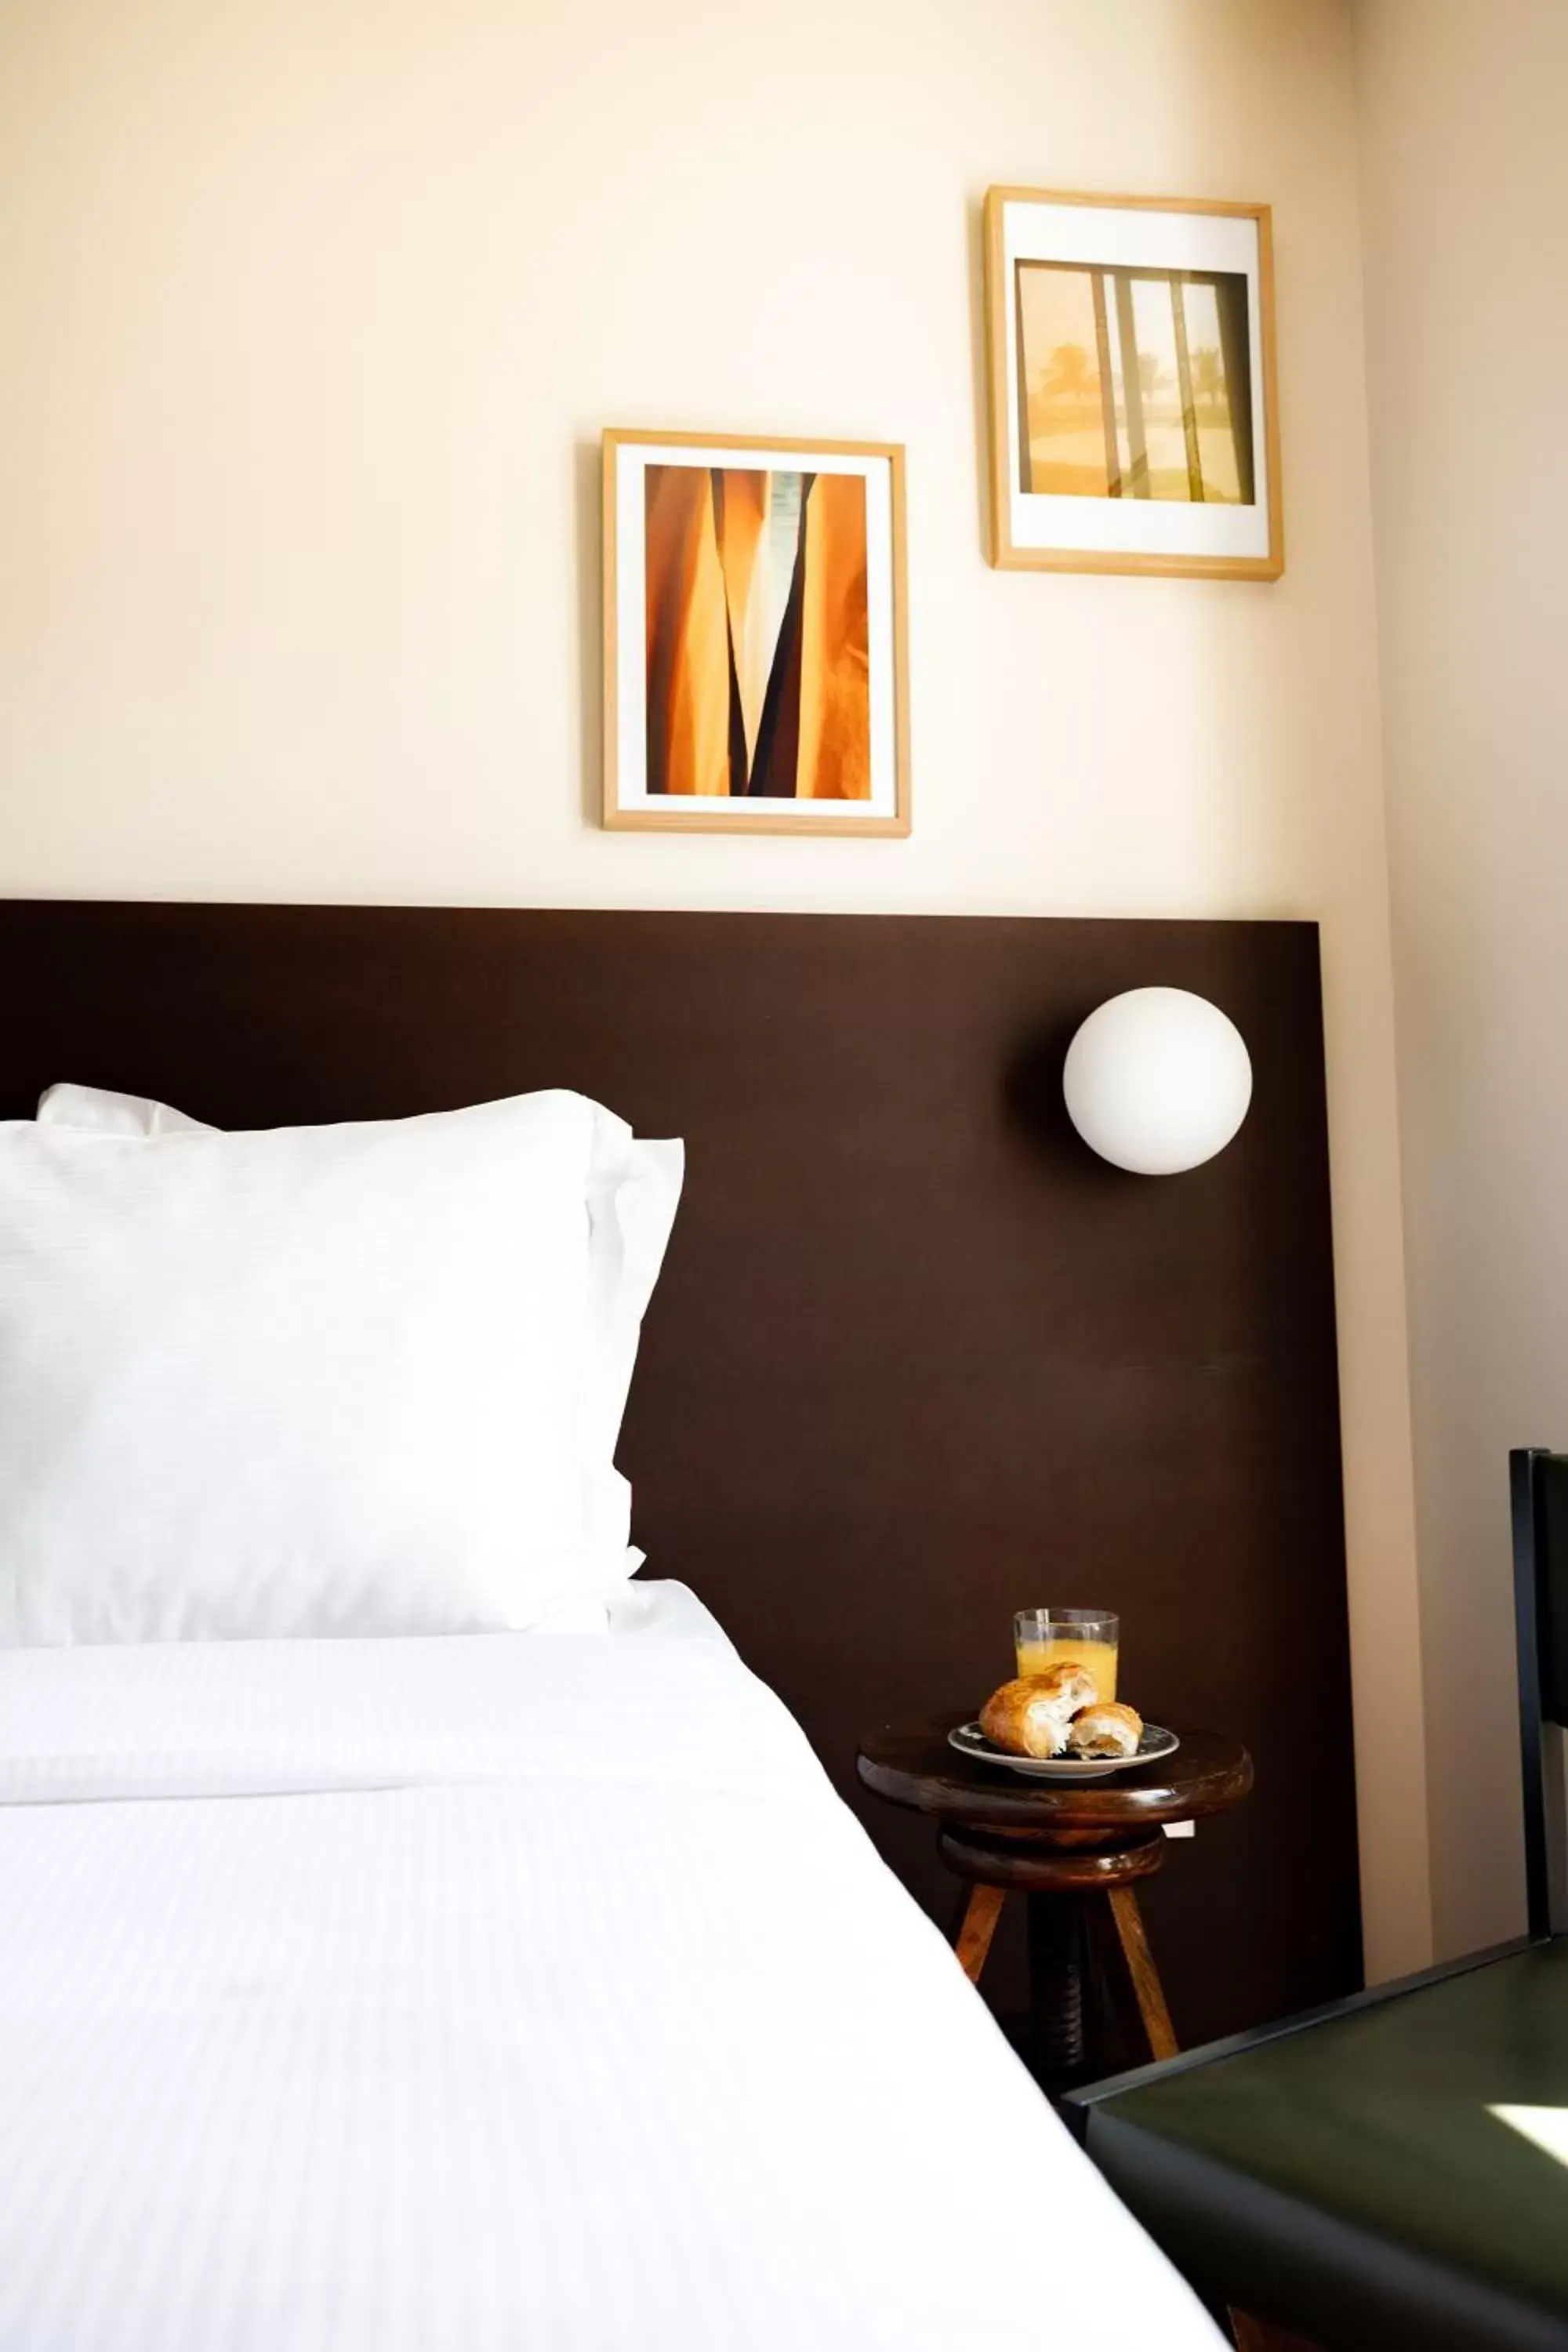 Bed in Hôtel Cabane - Orso Hotels